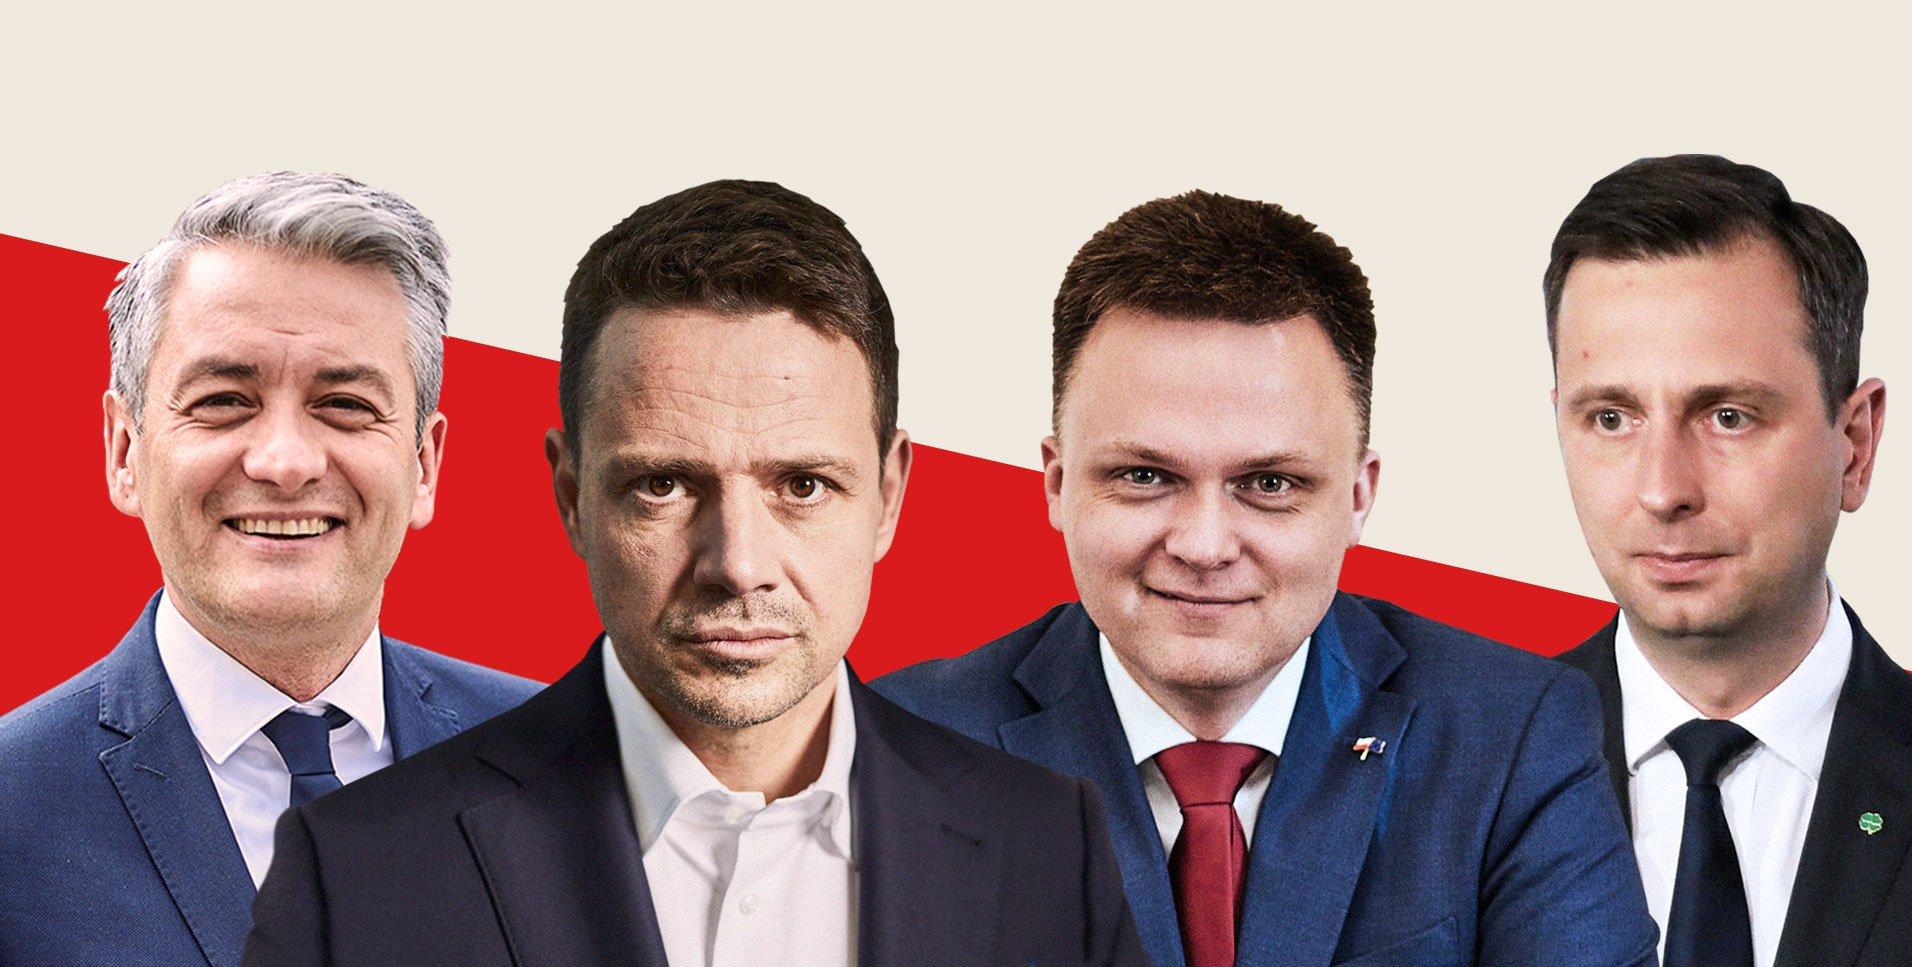 Biedroń, Trzaskowski, Hołownia, Kosiniak-Kamysz